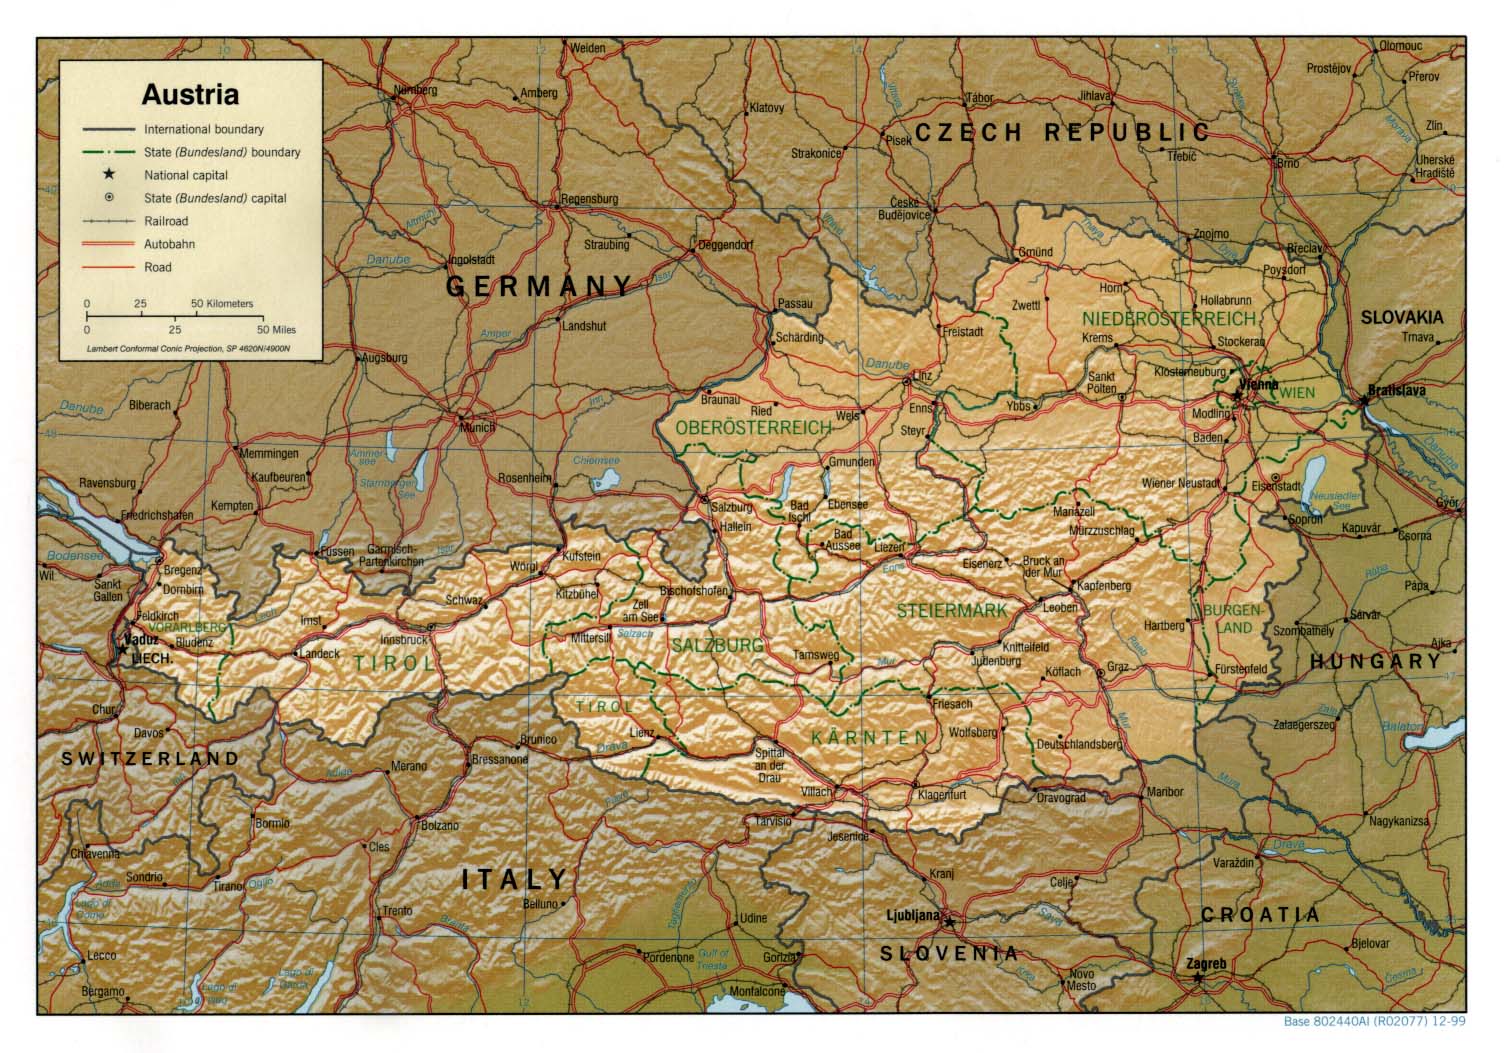 ausztria térkép steiermark Ausztria térkép lap   Megbízható válaszok profiktól ausztria térkép steiermark